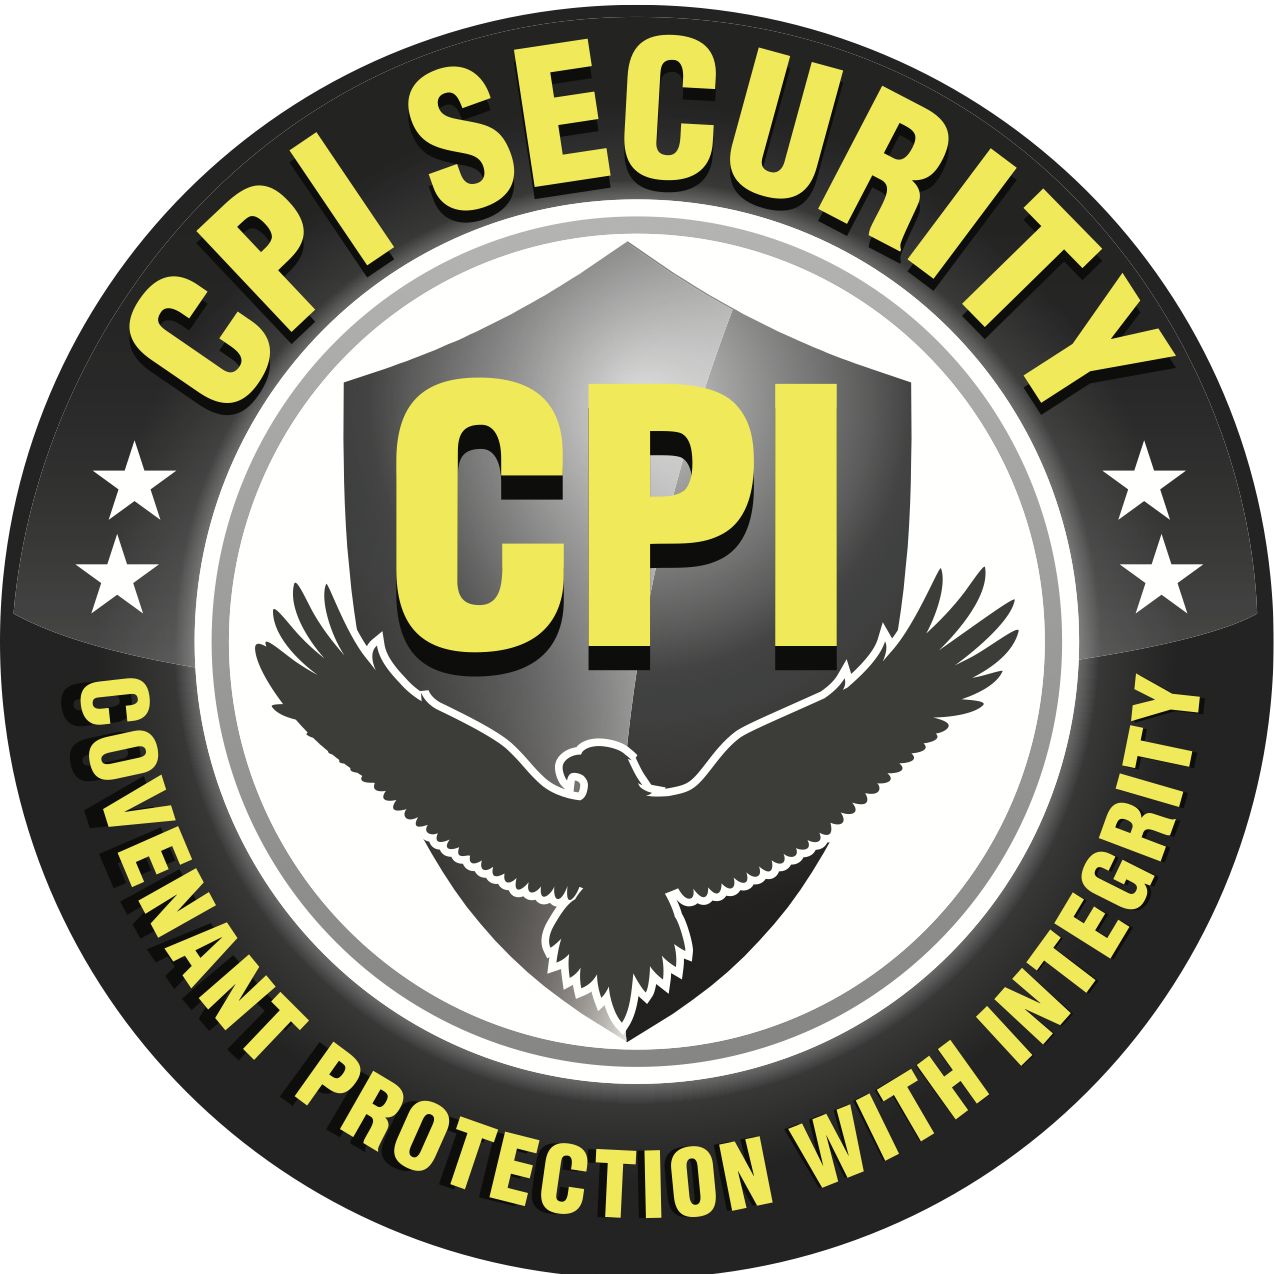 Cpi Security Corp. | Pomona, CA | Thumbtack